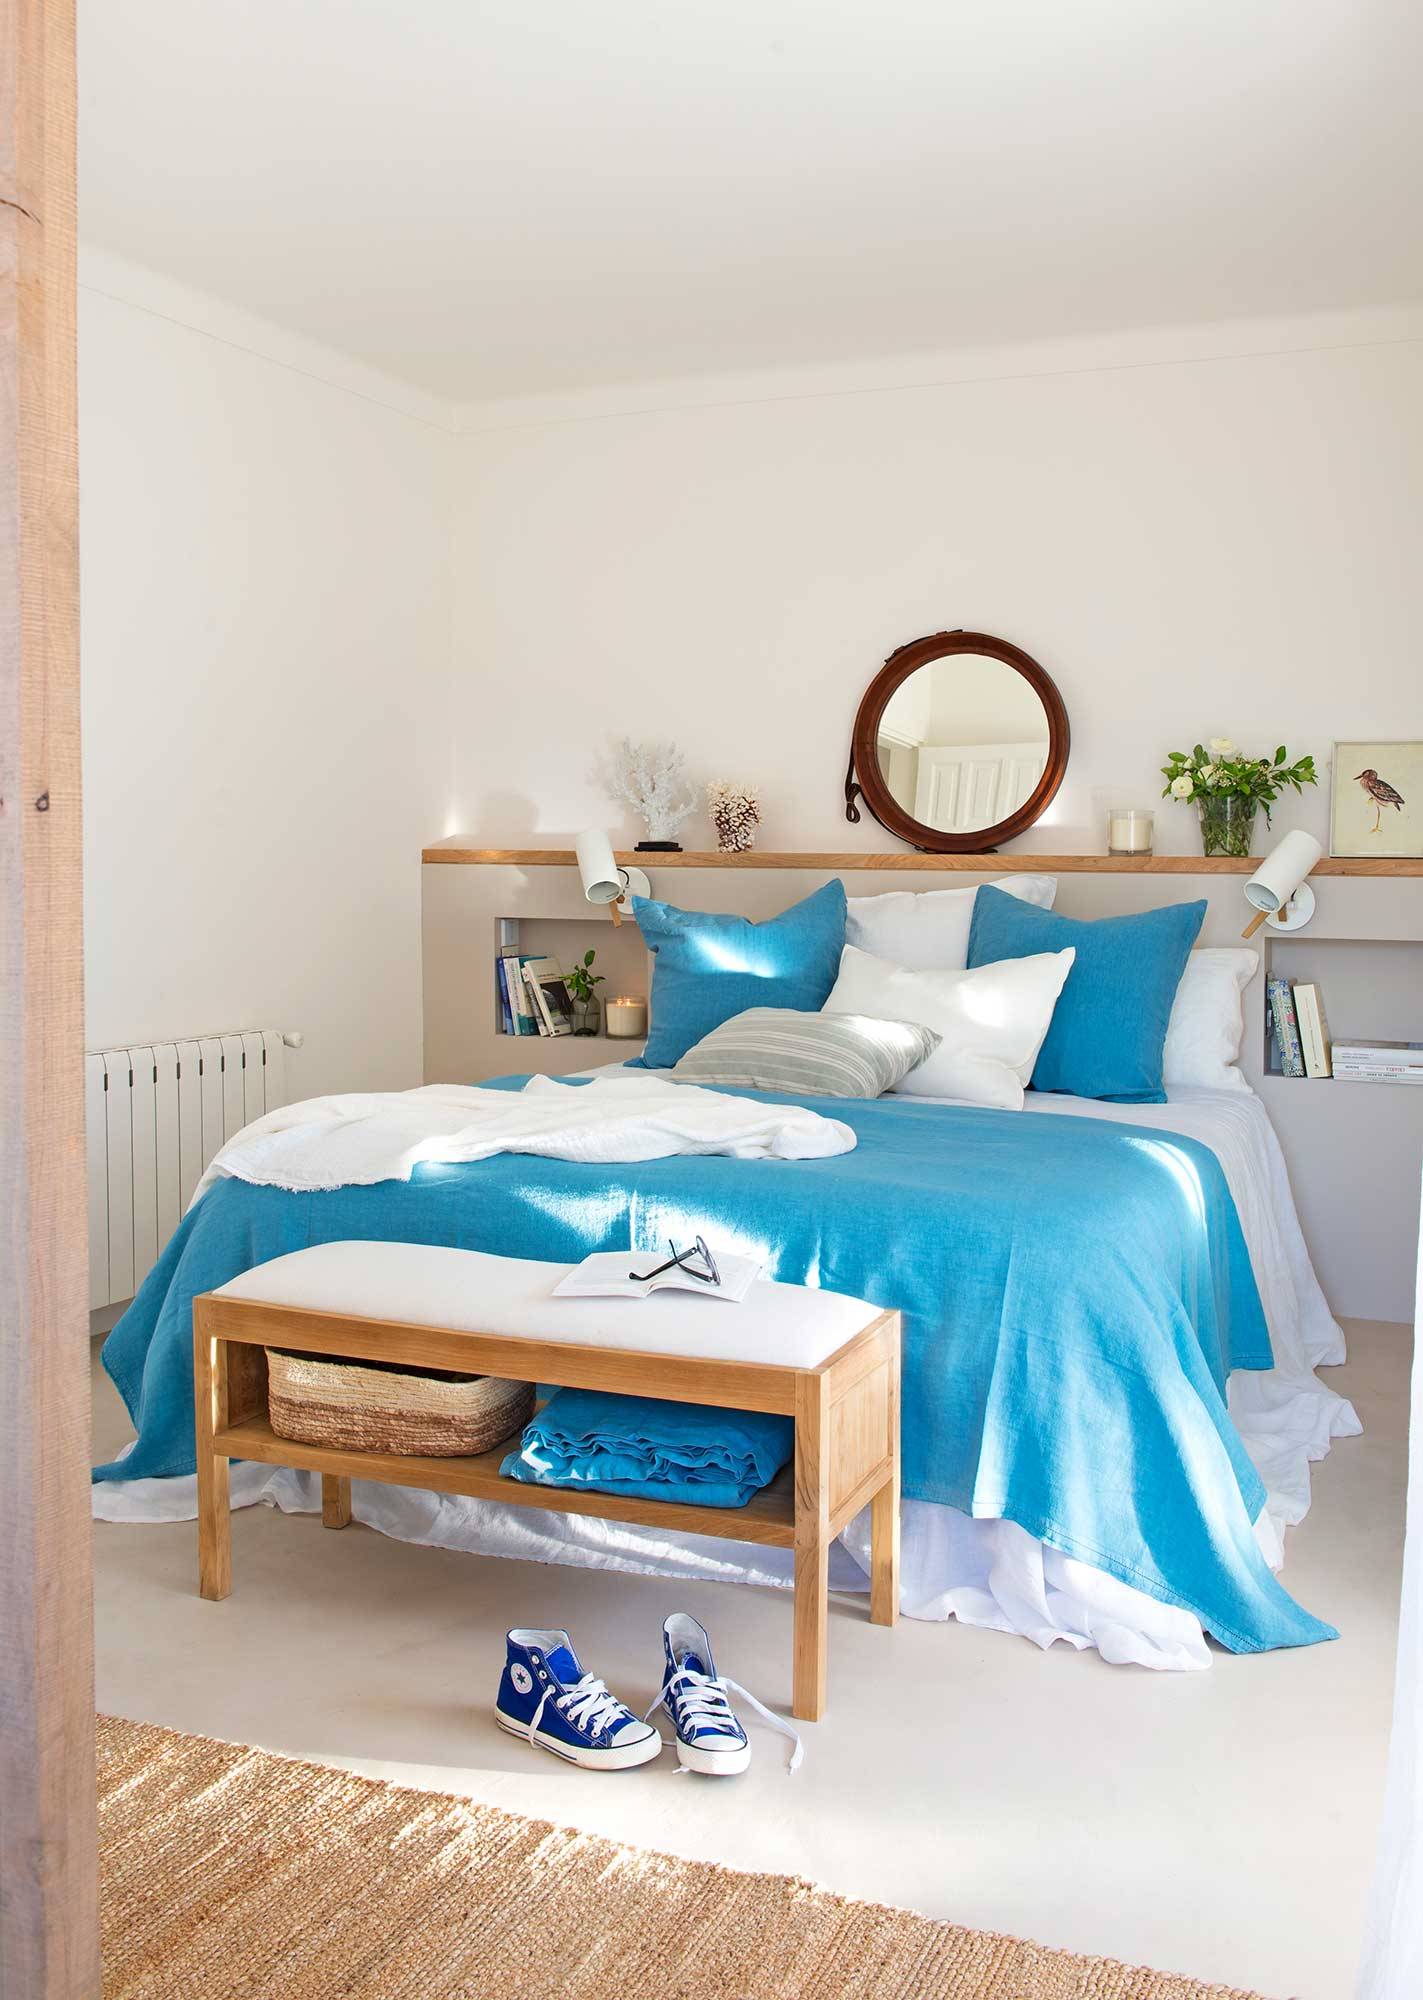 Dormitorio fresco de primavera en blanco y azul_00503968 O